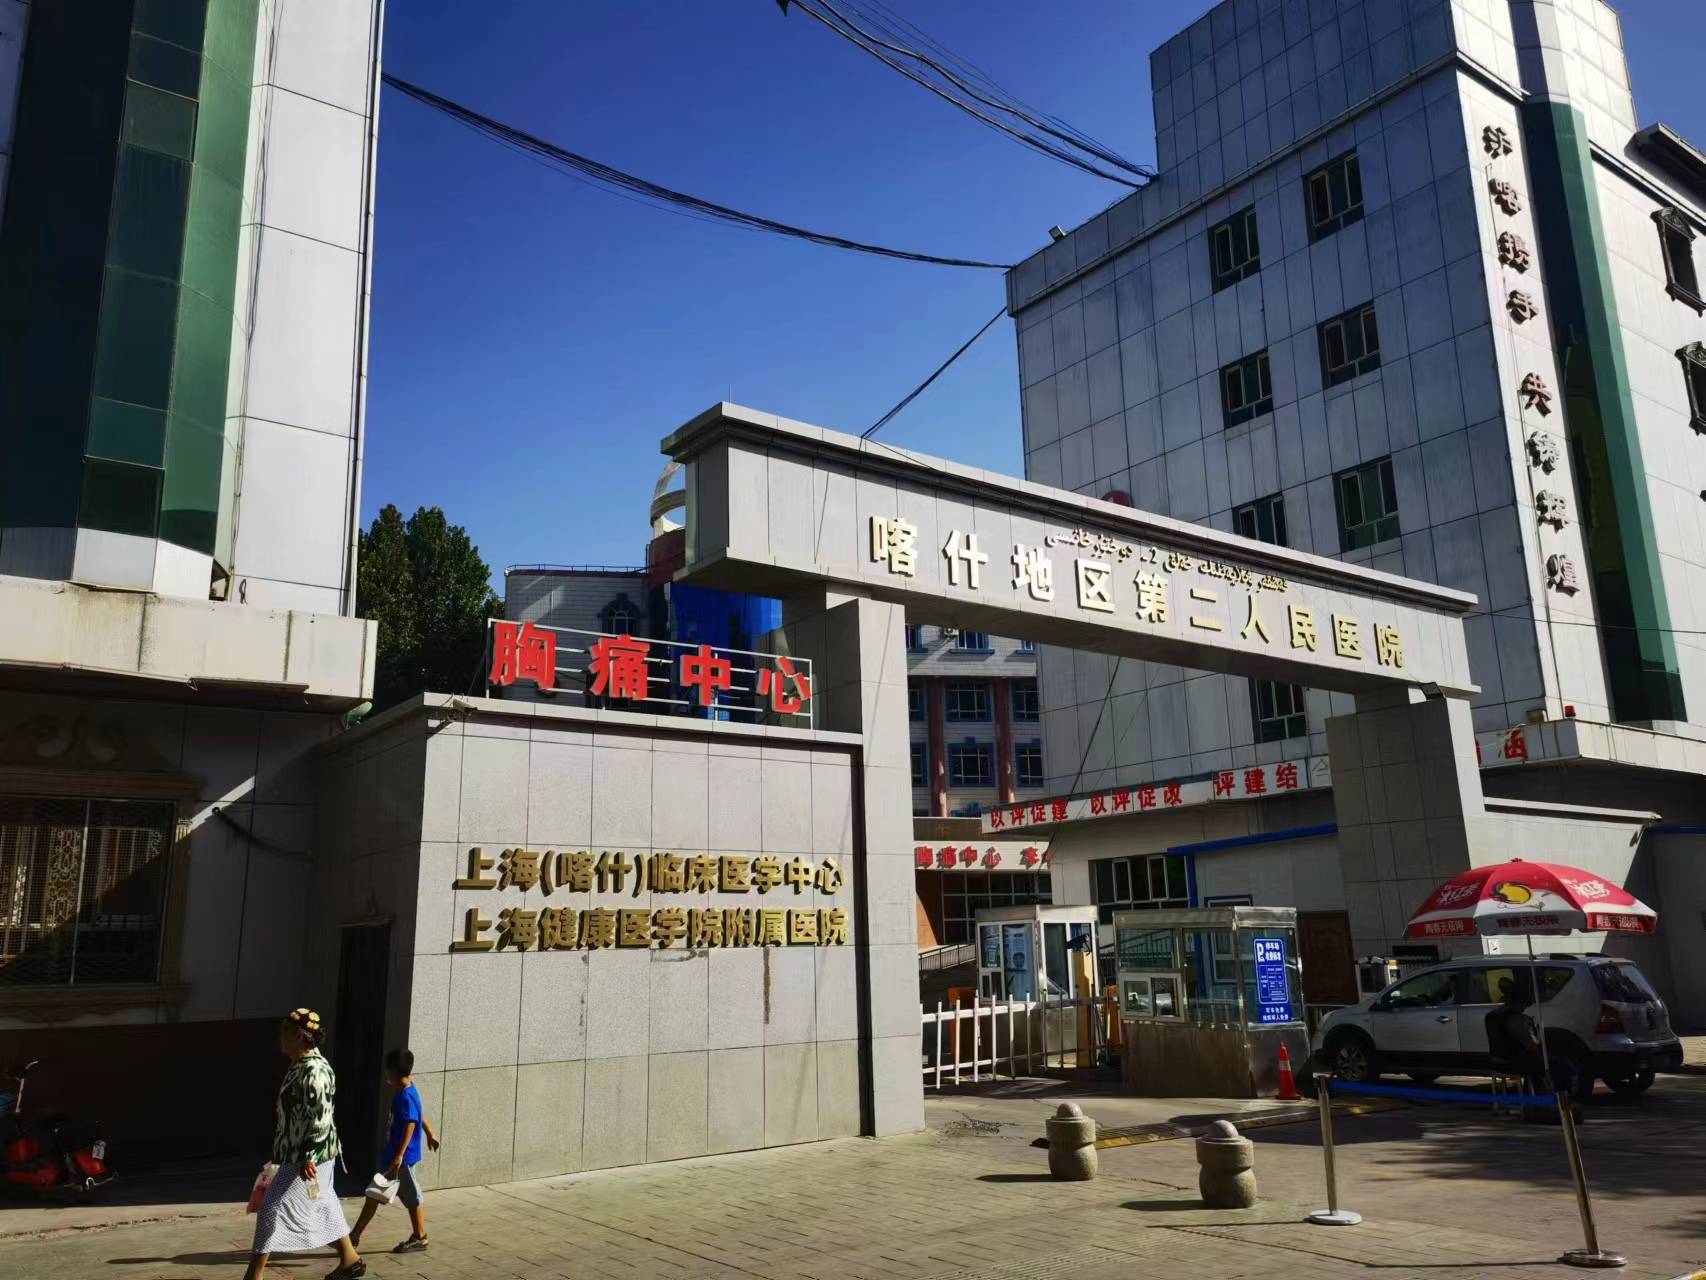 上海健康医学院附属喀什地区第二人民医院,是广袤南疆大地上一家承担